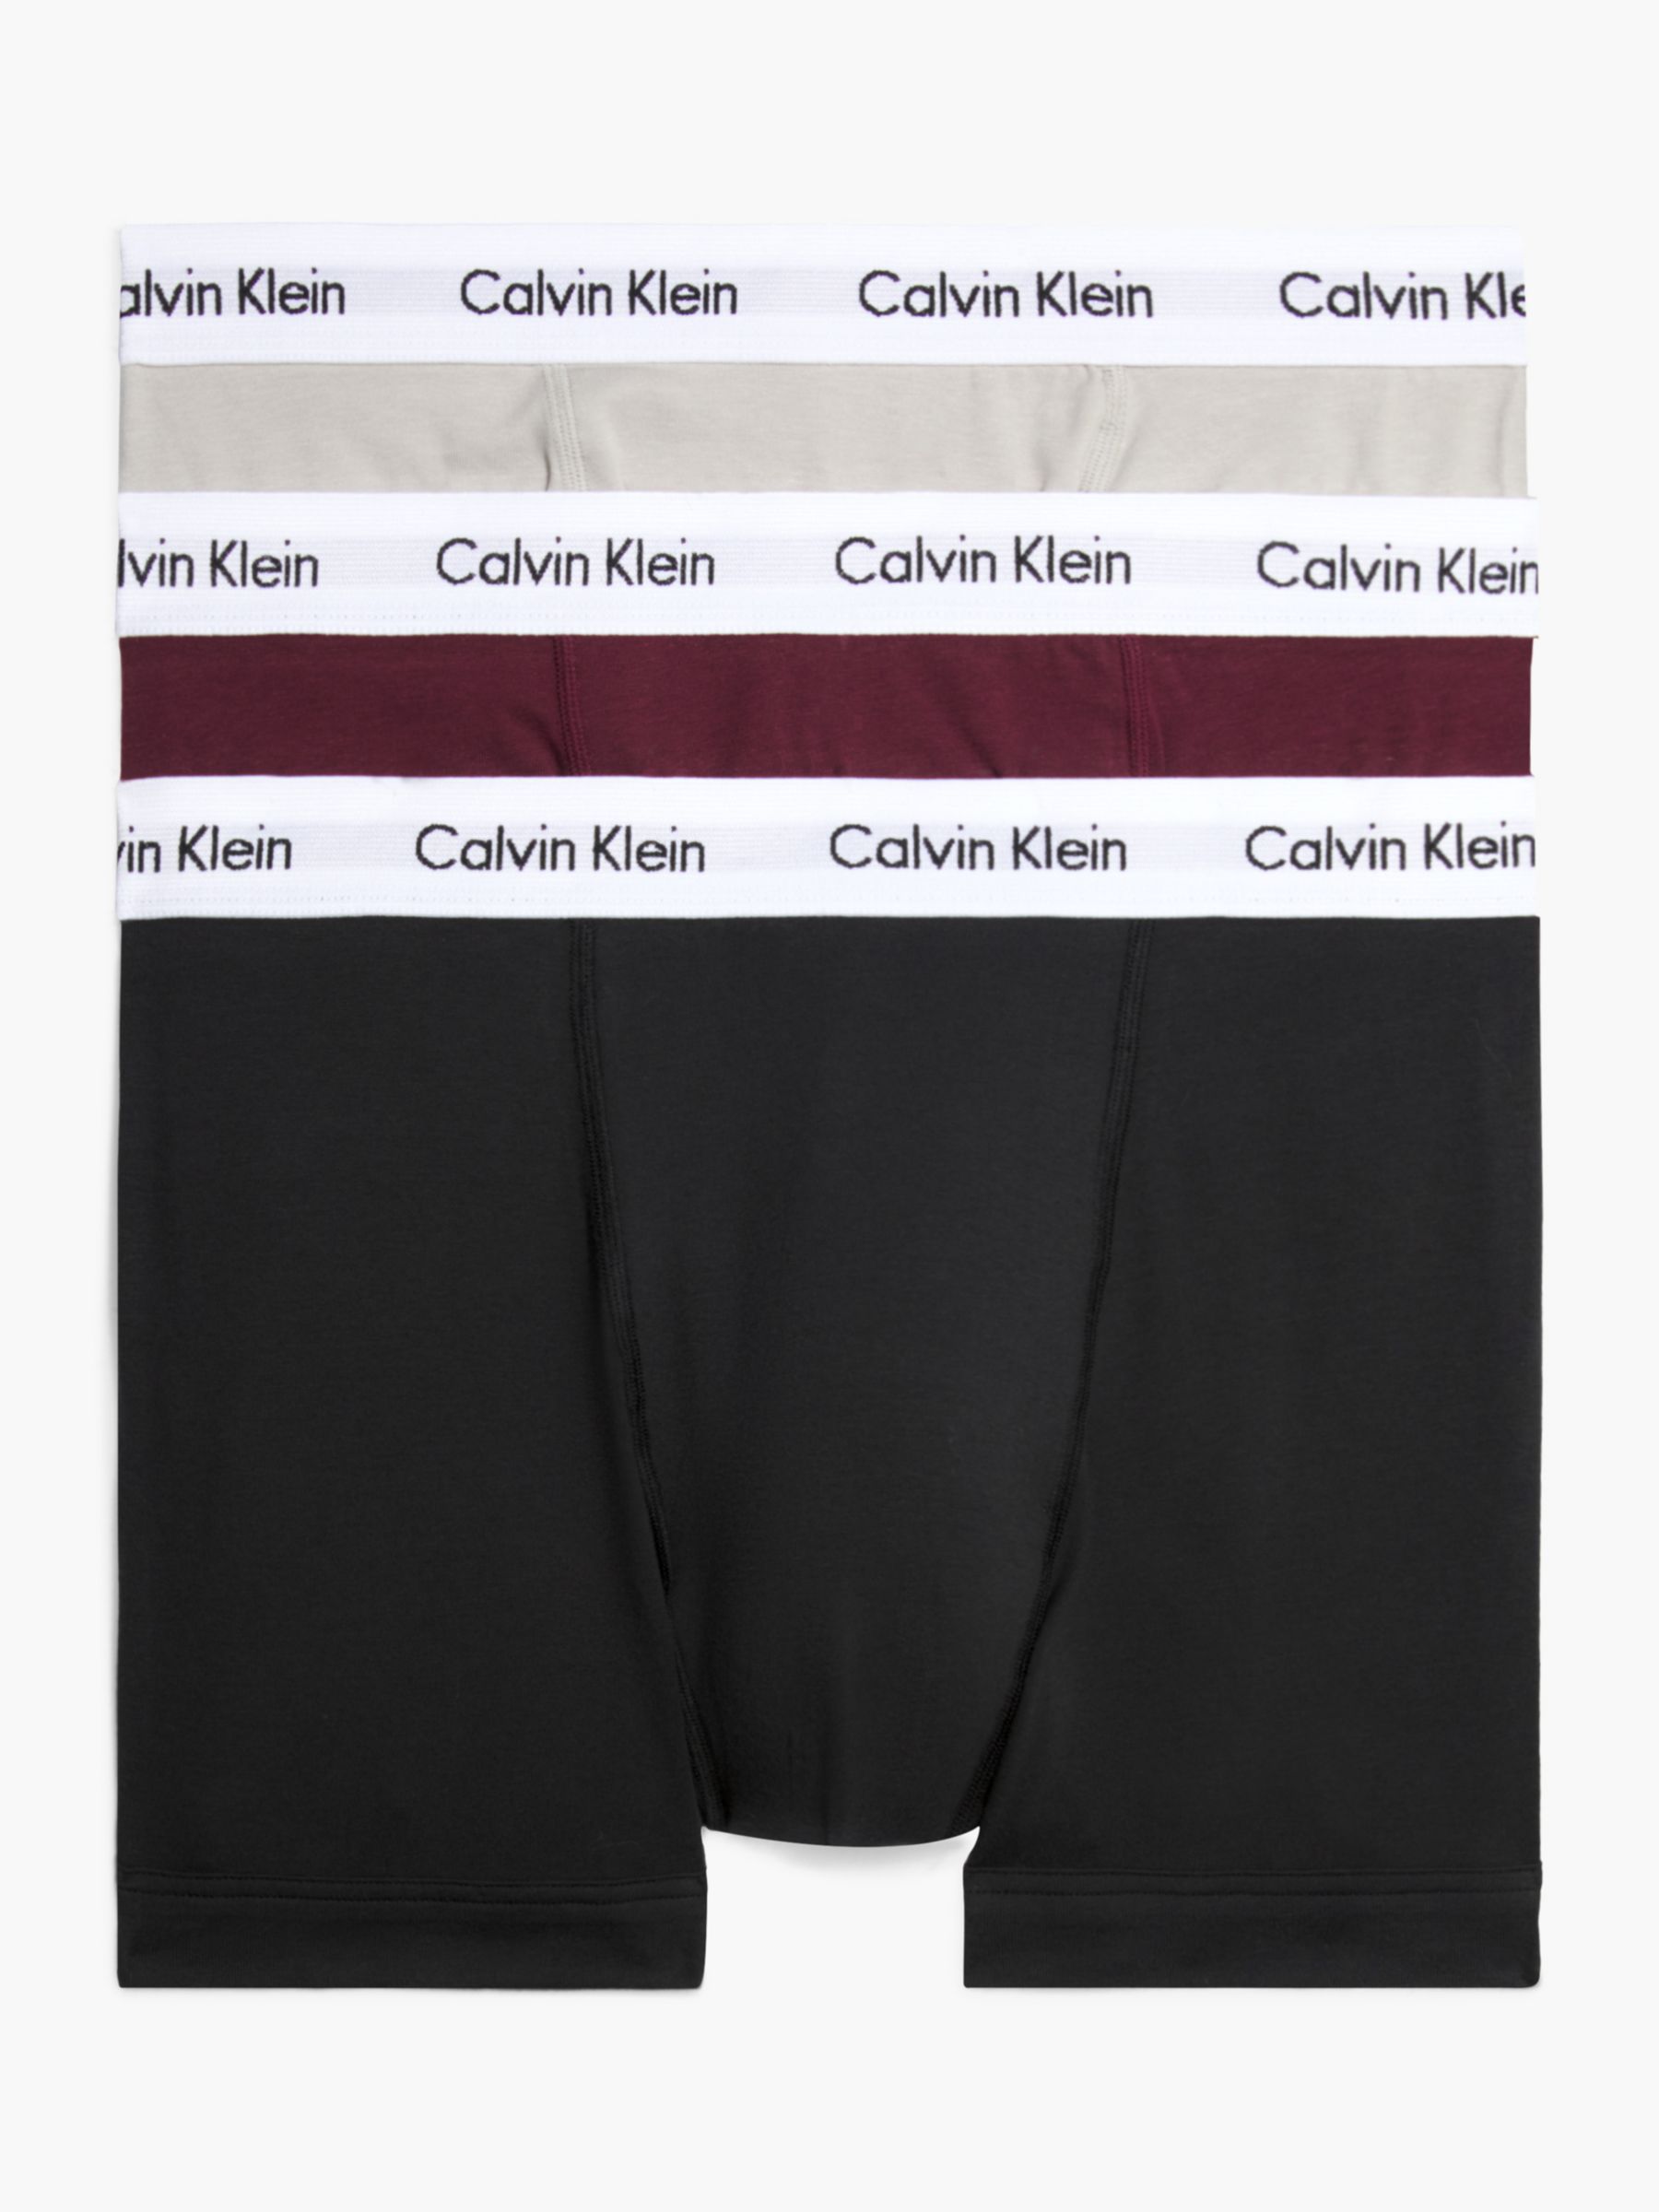 Buy Calvin Klein Cotton Stretch Hip Briefs 3 Pack from Next Poland